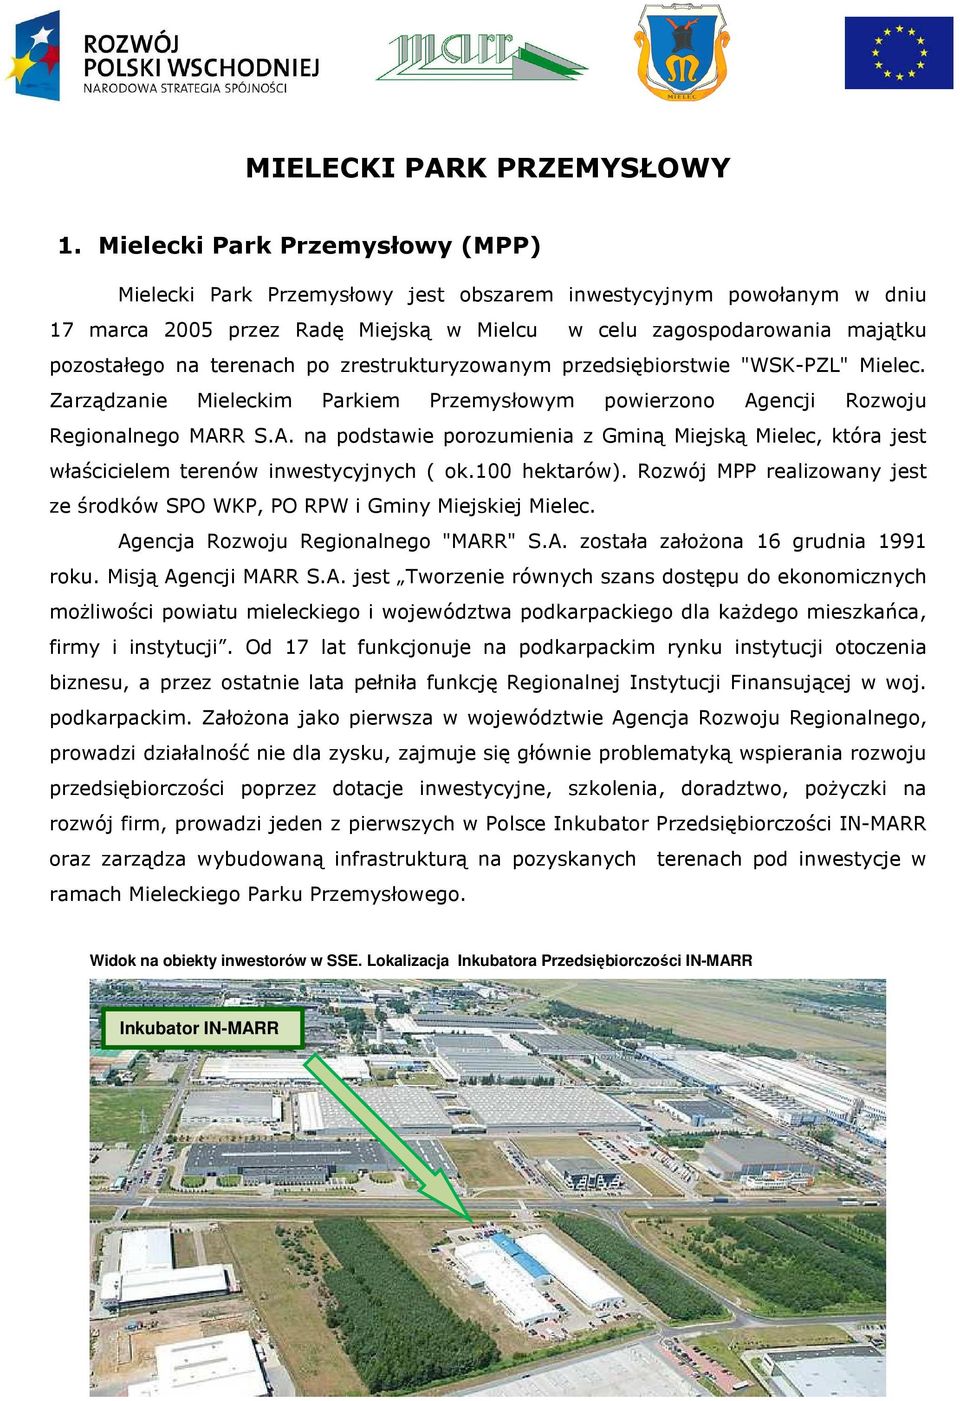 terenach po zrestrukturyzowanym przedsiębiorstwie "WSK-PZL" Mielec. Zarządzanie Mieleckim Parkiem Przemysłowym powierzono Ag